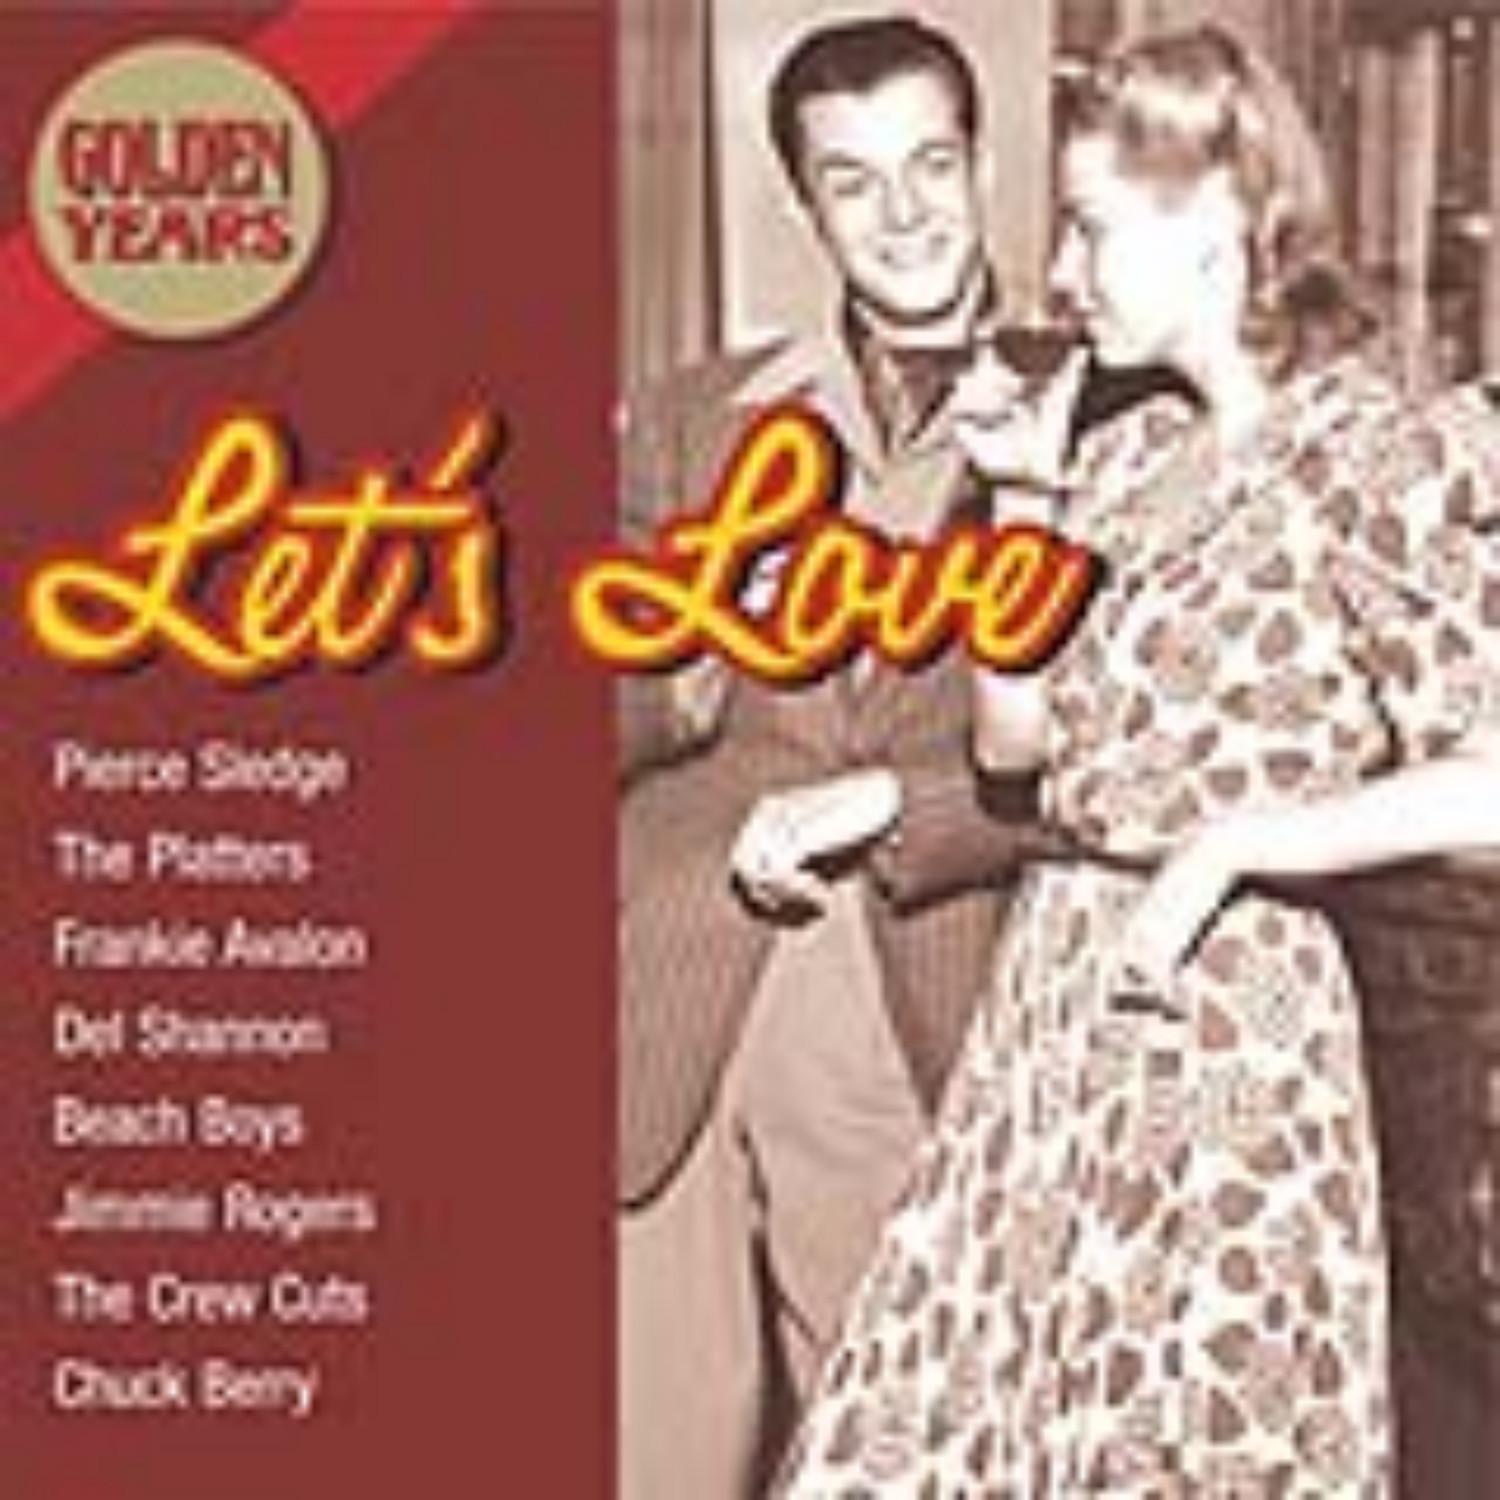 Golden Years-Let's Love